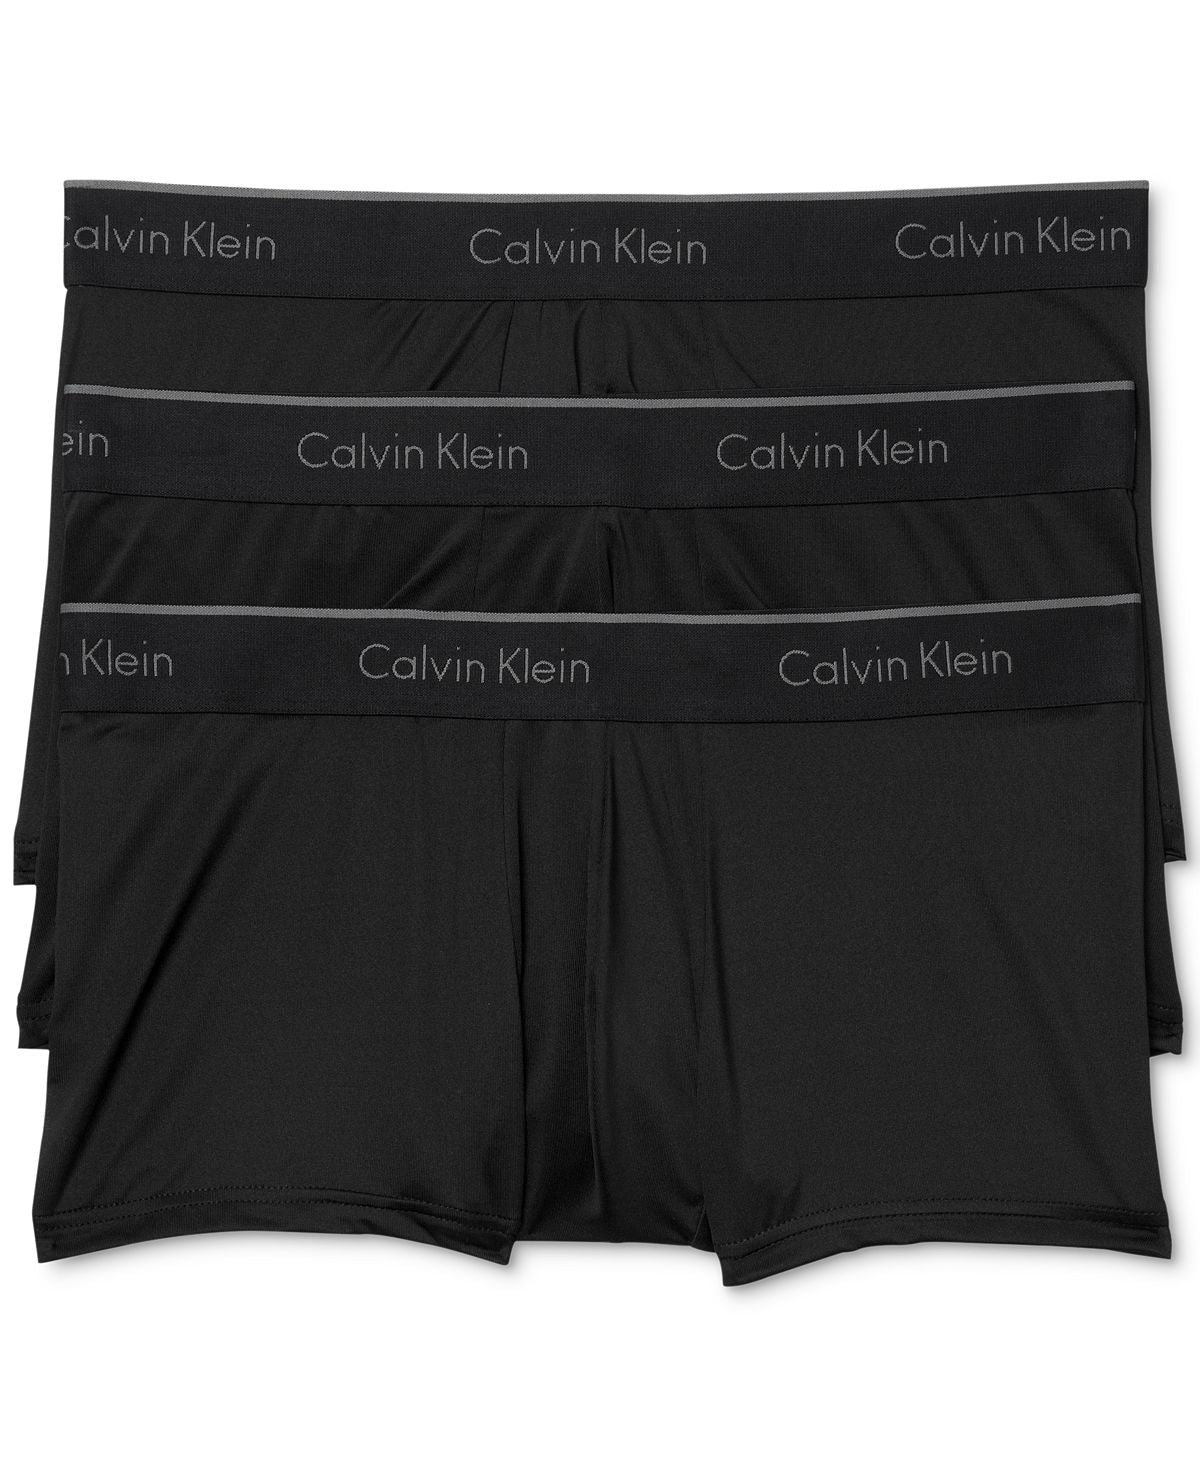 Calvin Klein Microfiber Stretch Trunk 3-pack Black